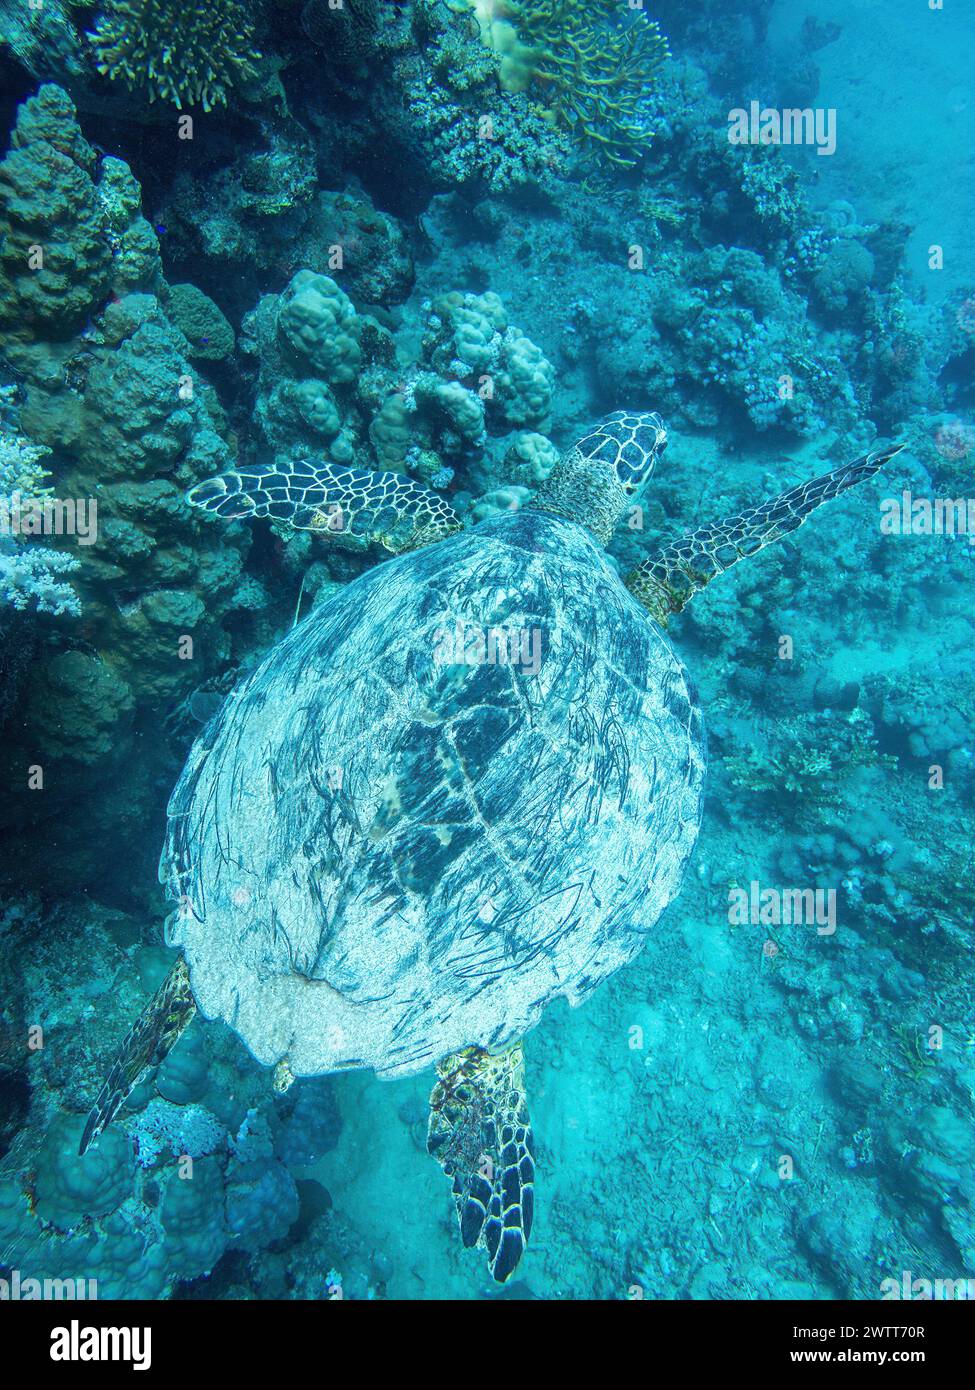 Tortuga acuática en el arrecife de coral durante una inmersión en Bali Foto de stock